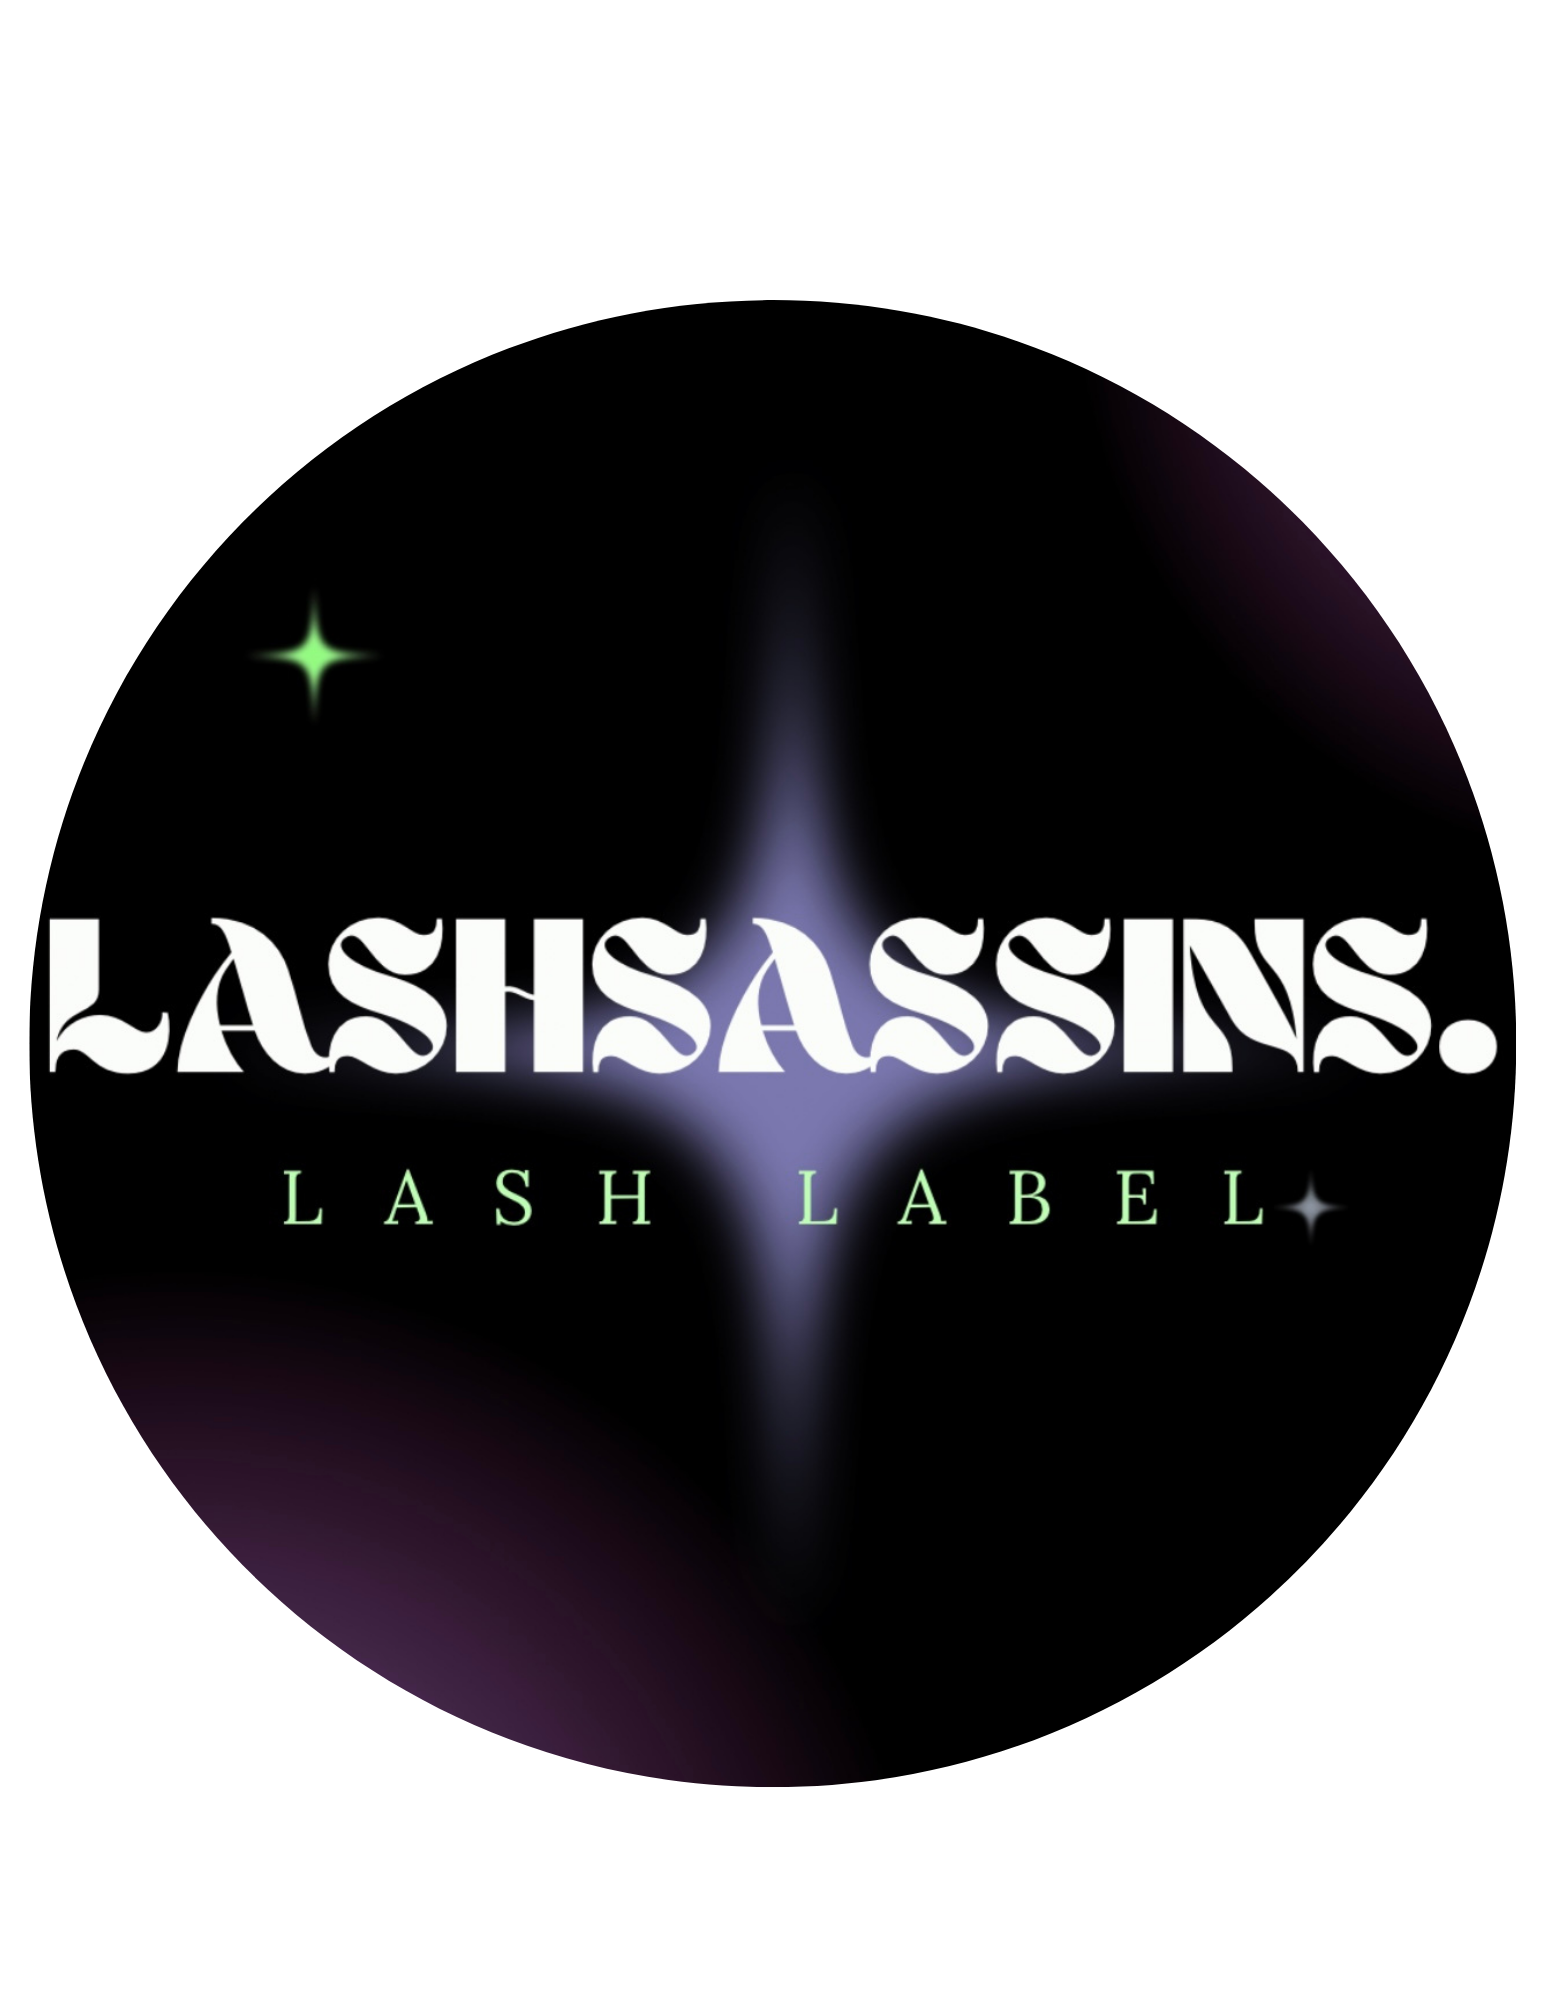 LASHSASSINS.LASHLABEL